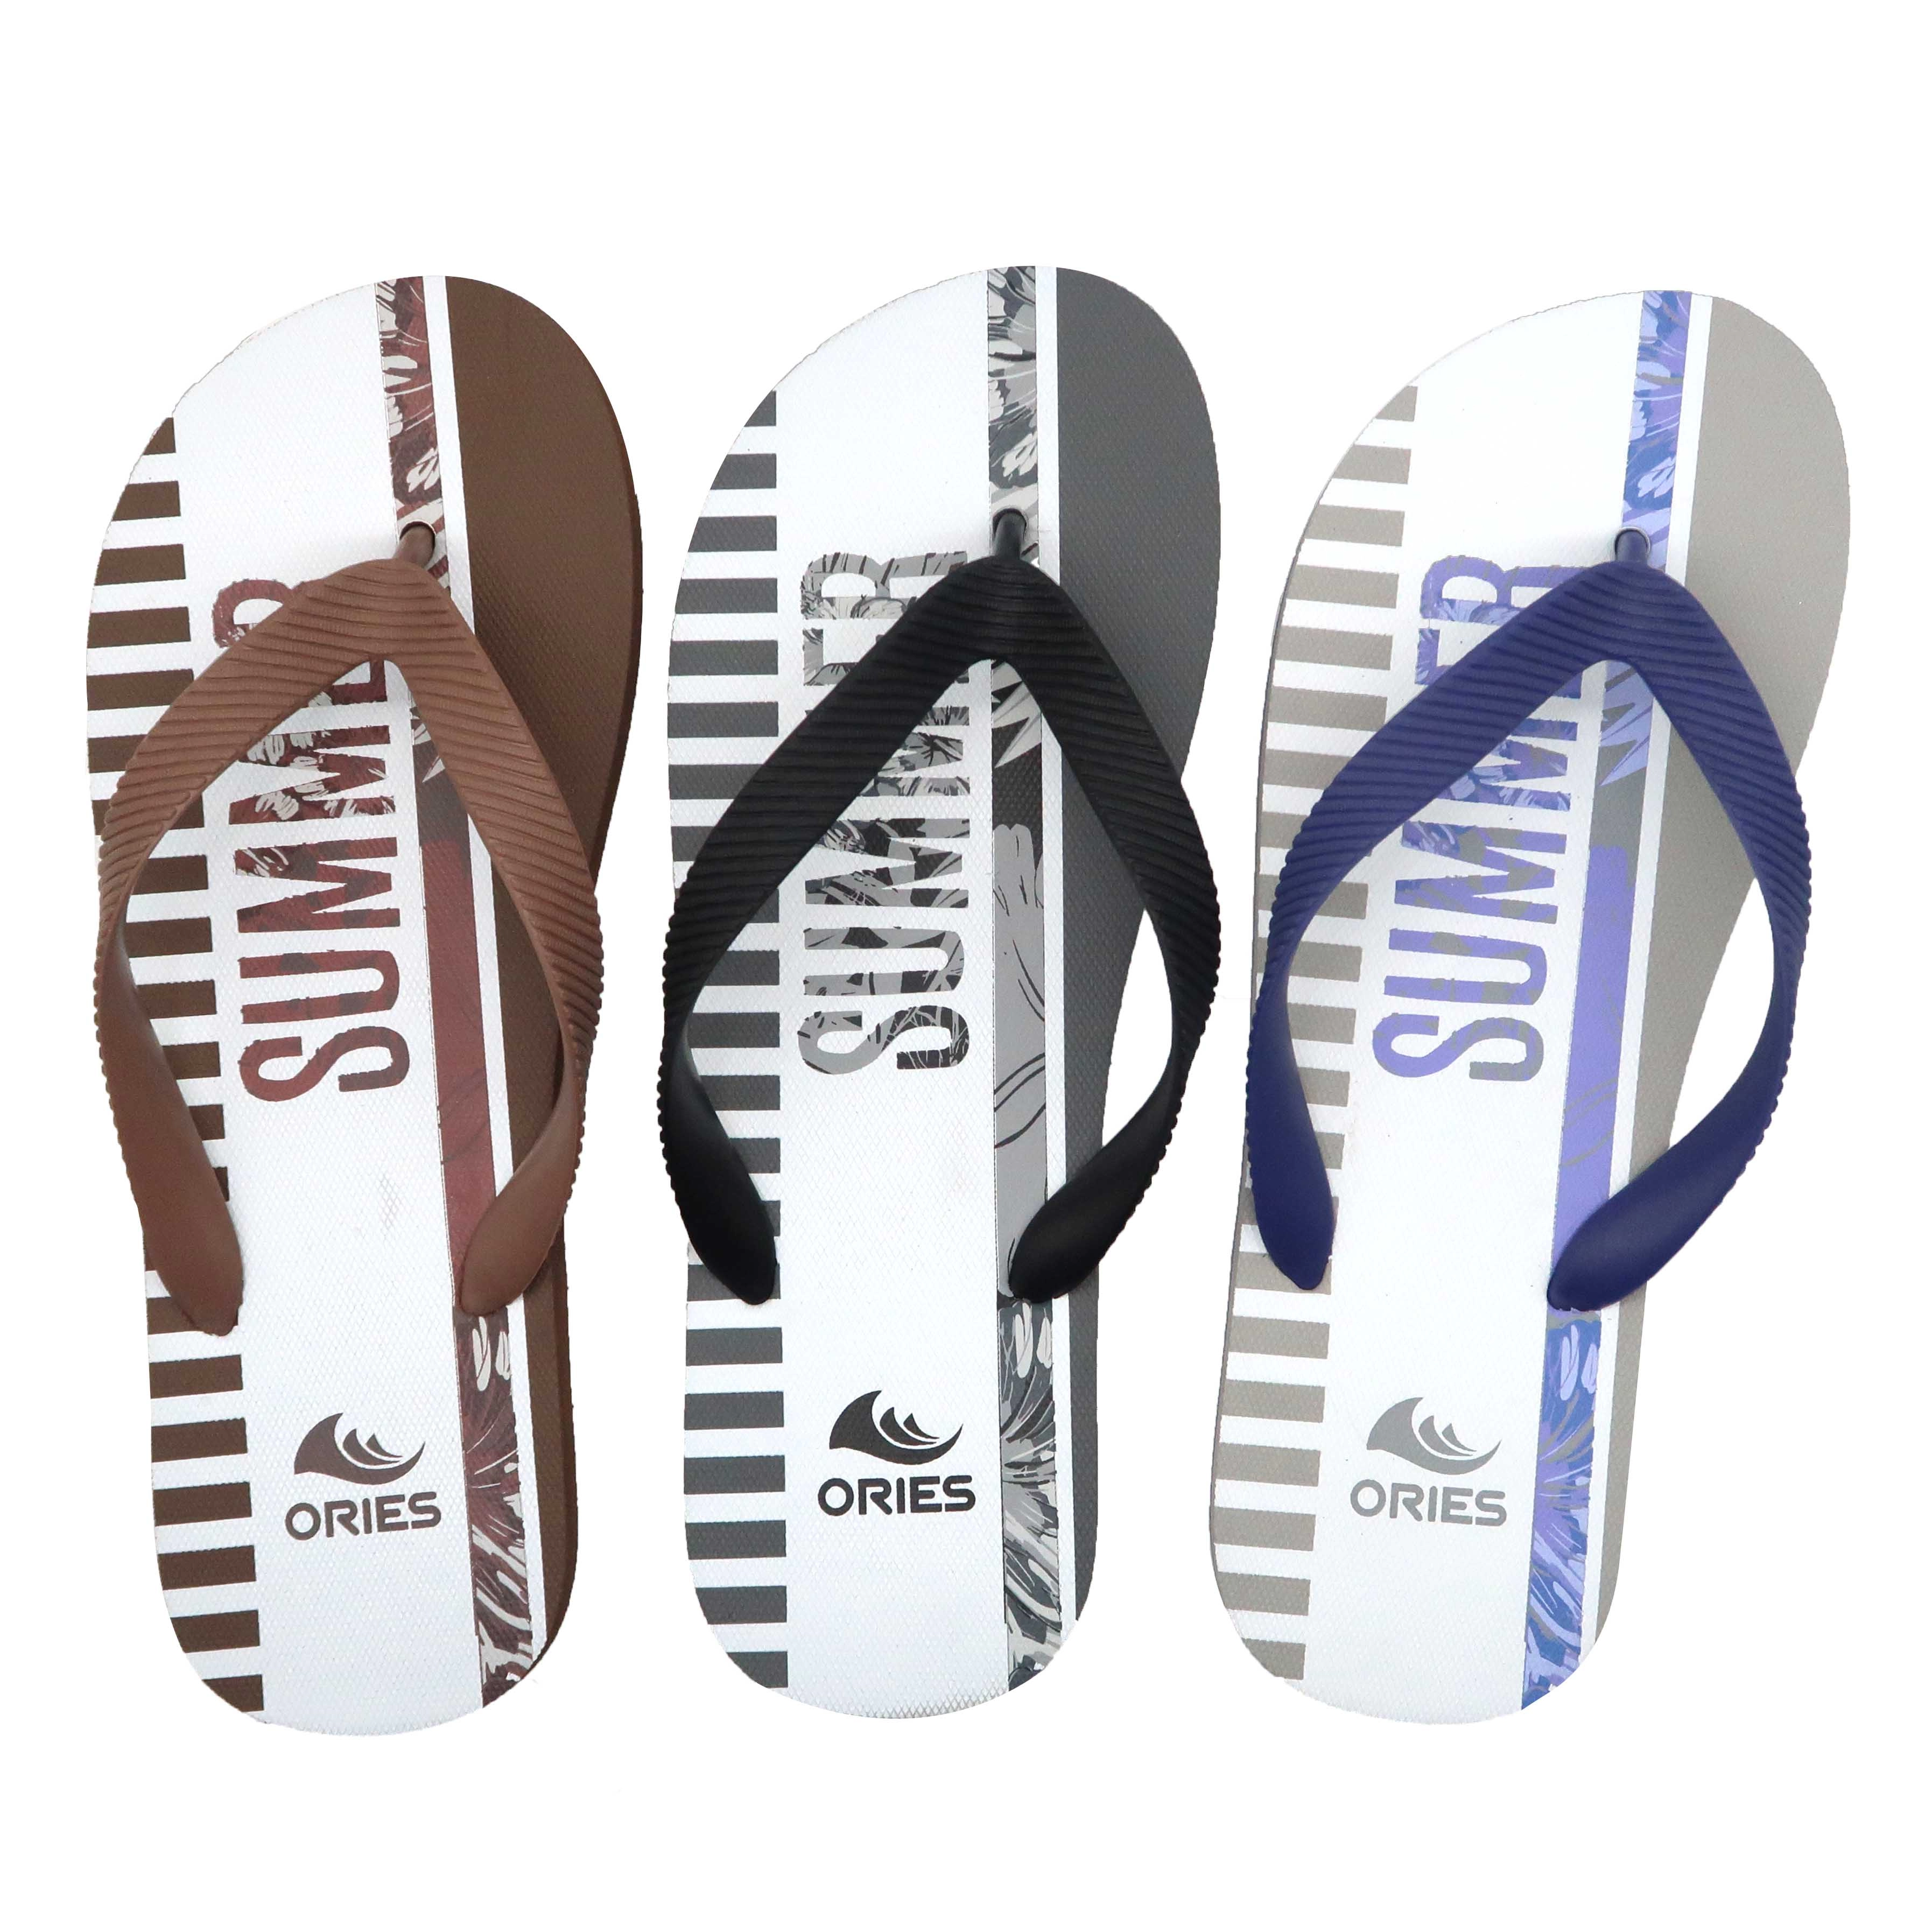 Giảm giá thiết kế mới phổ biến bền màu tím rắn chắc nam giới giá rẻ giày sandal xỏ ngón cao su đi biển cỡ lớn đi biển có logo